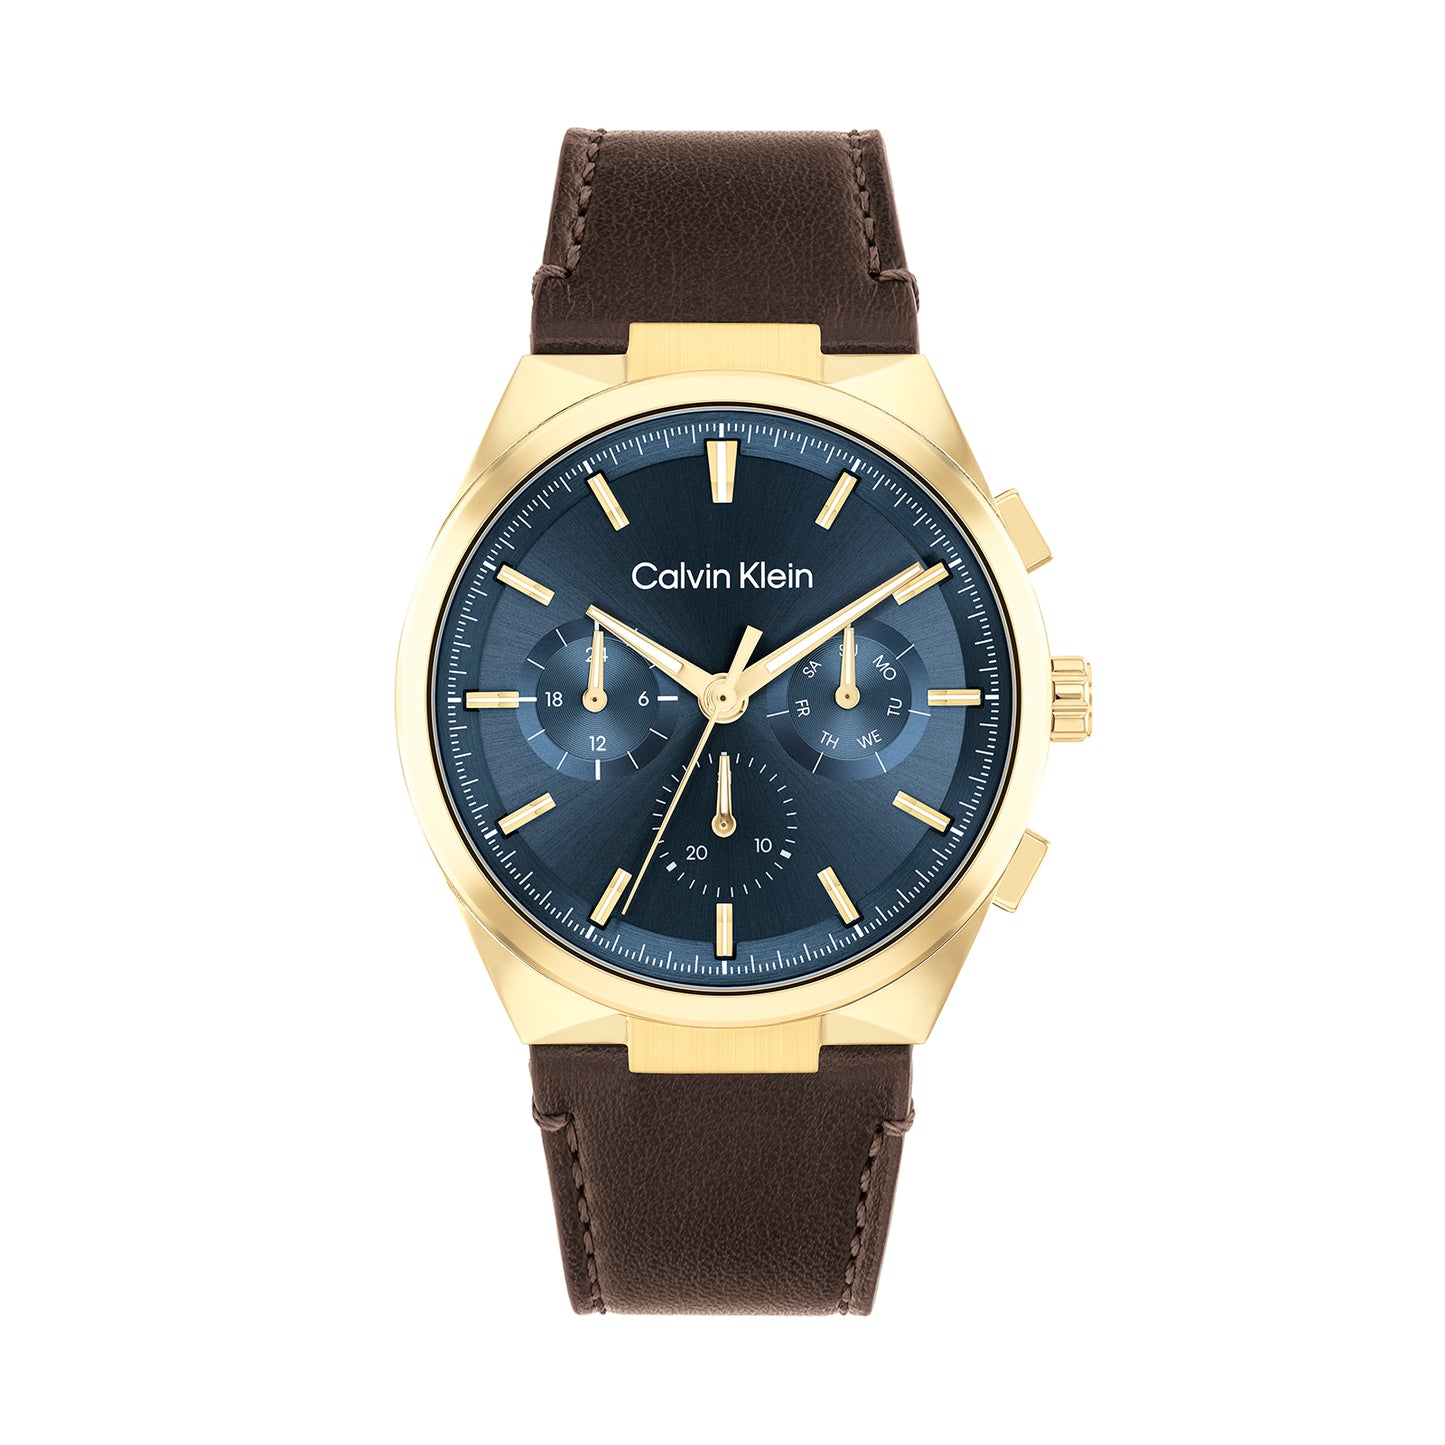 Calvin Klein 25200445 Men's Leather Watch